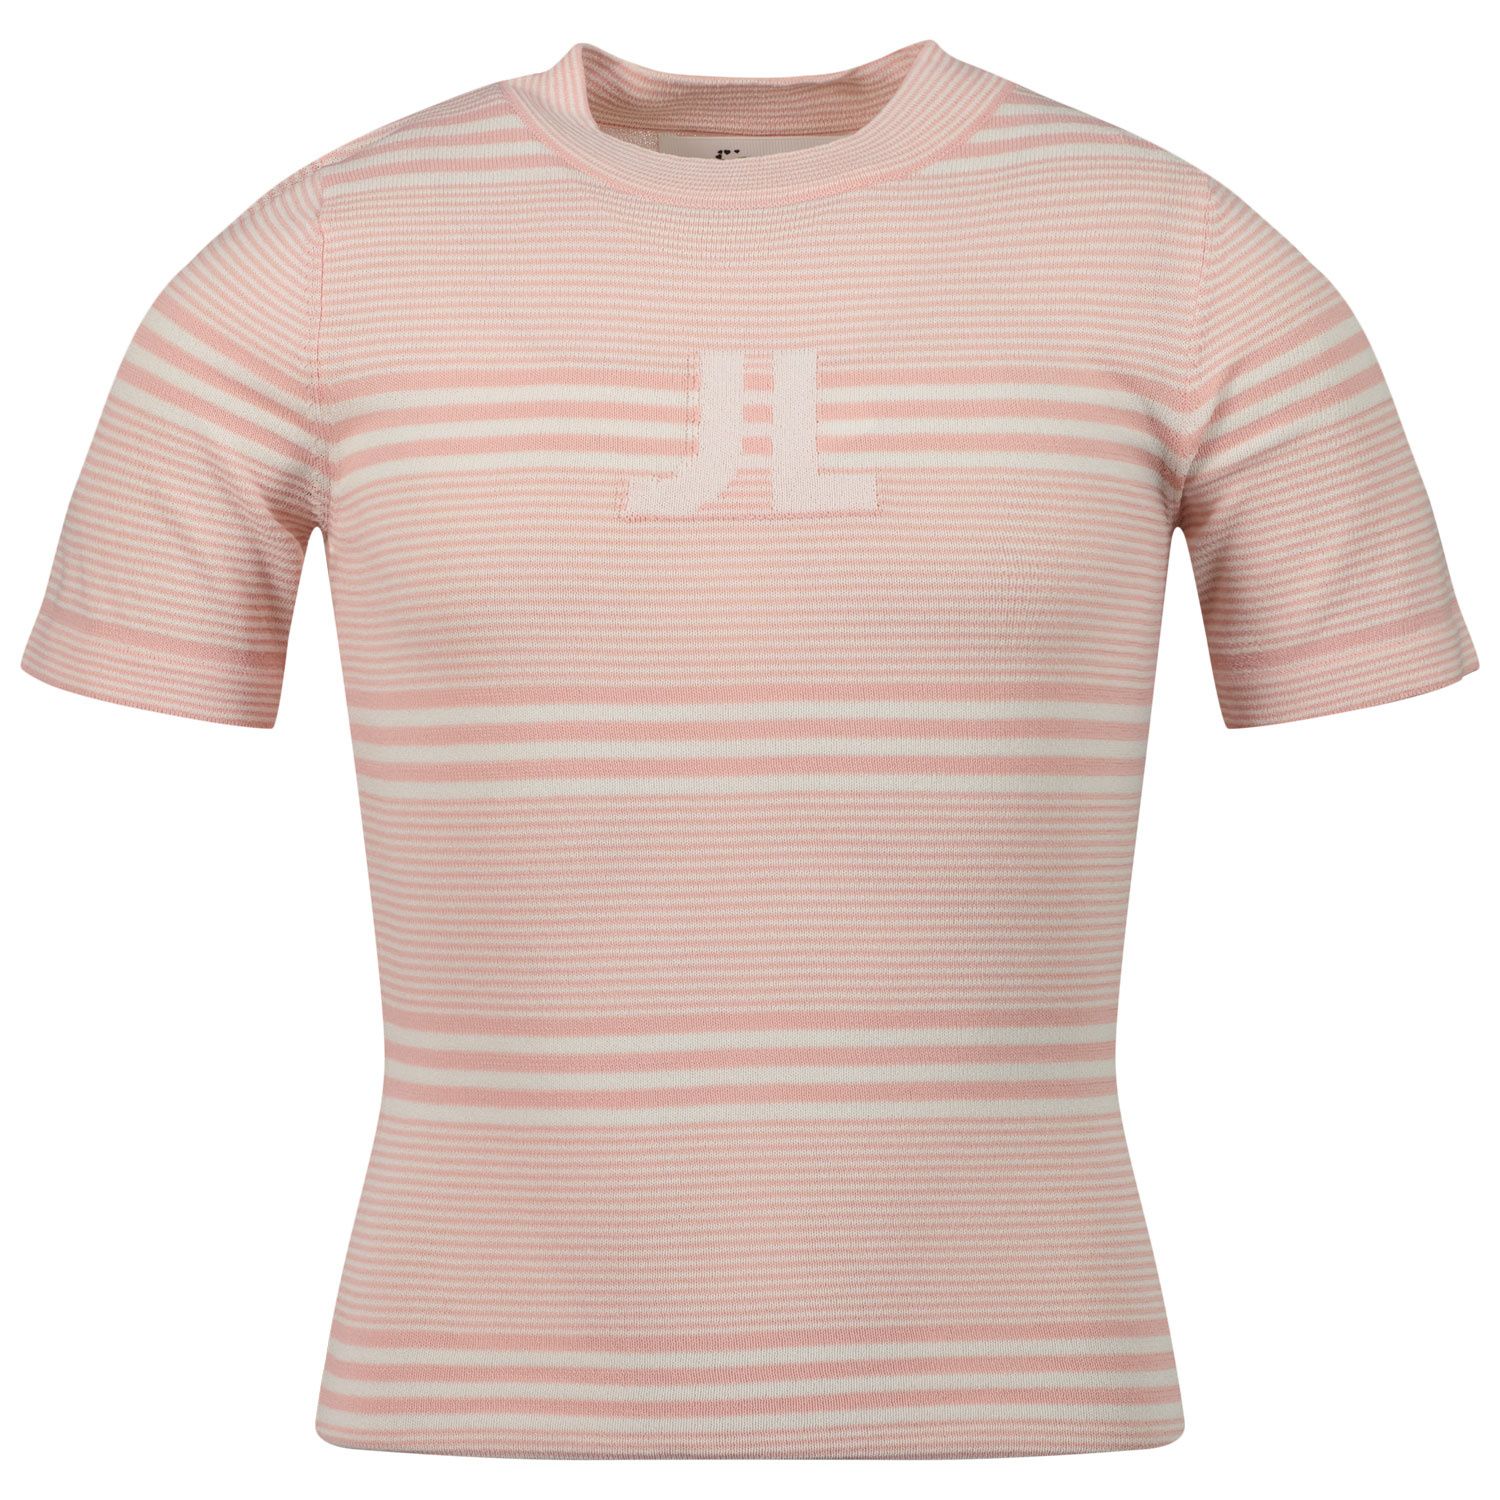 Afbeelding van Jacky Girls JG220304 kinder t-shirt licht roze